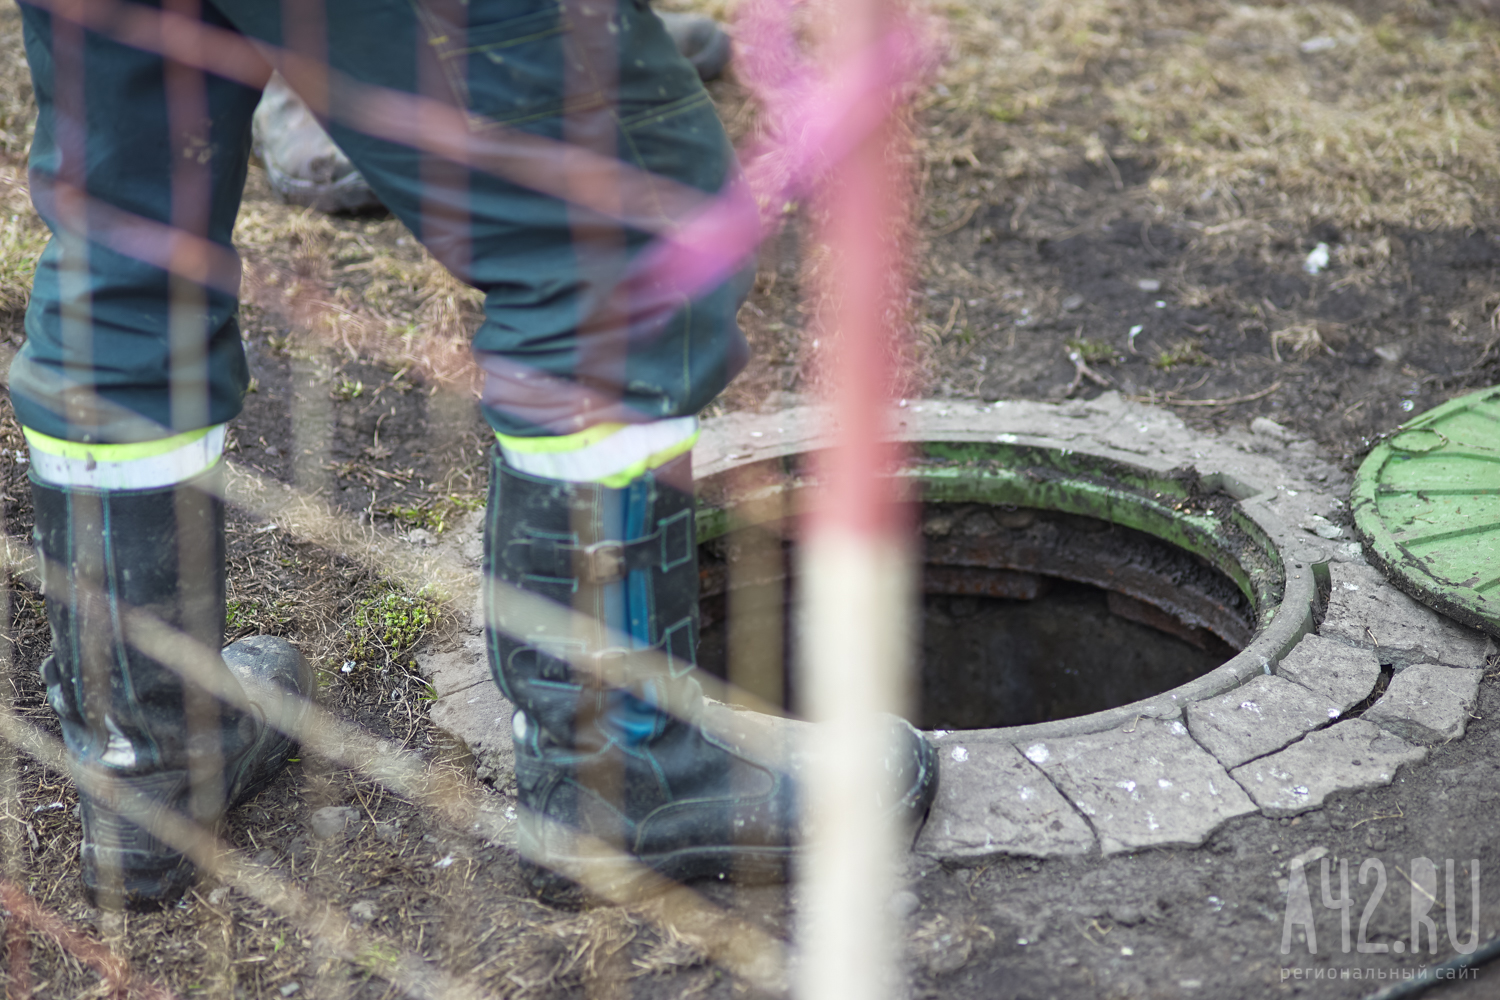 Двое мужчин погибли при очистке канализационного колодца в Кузбассе